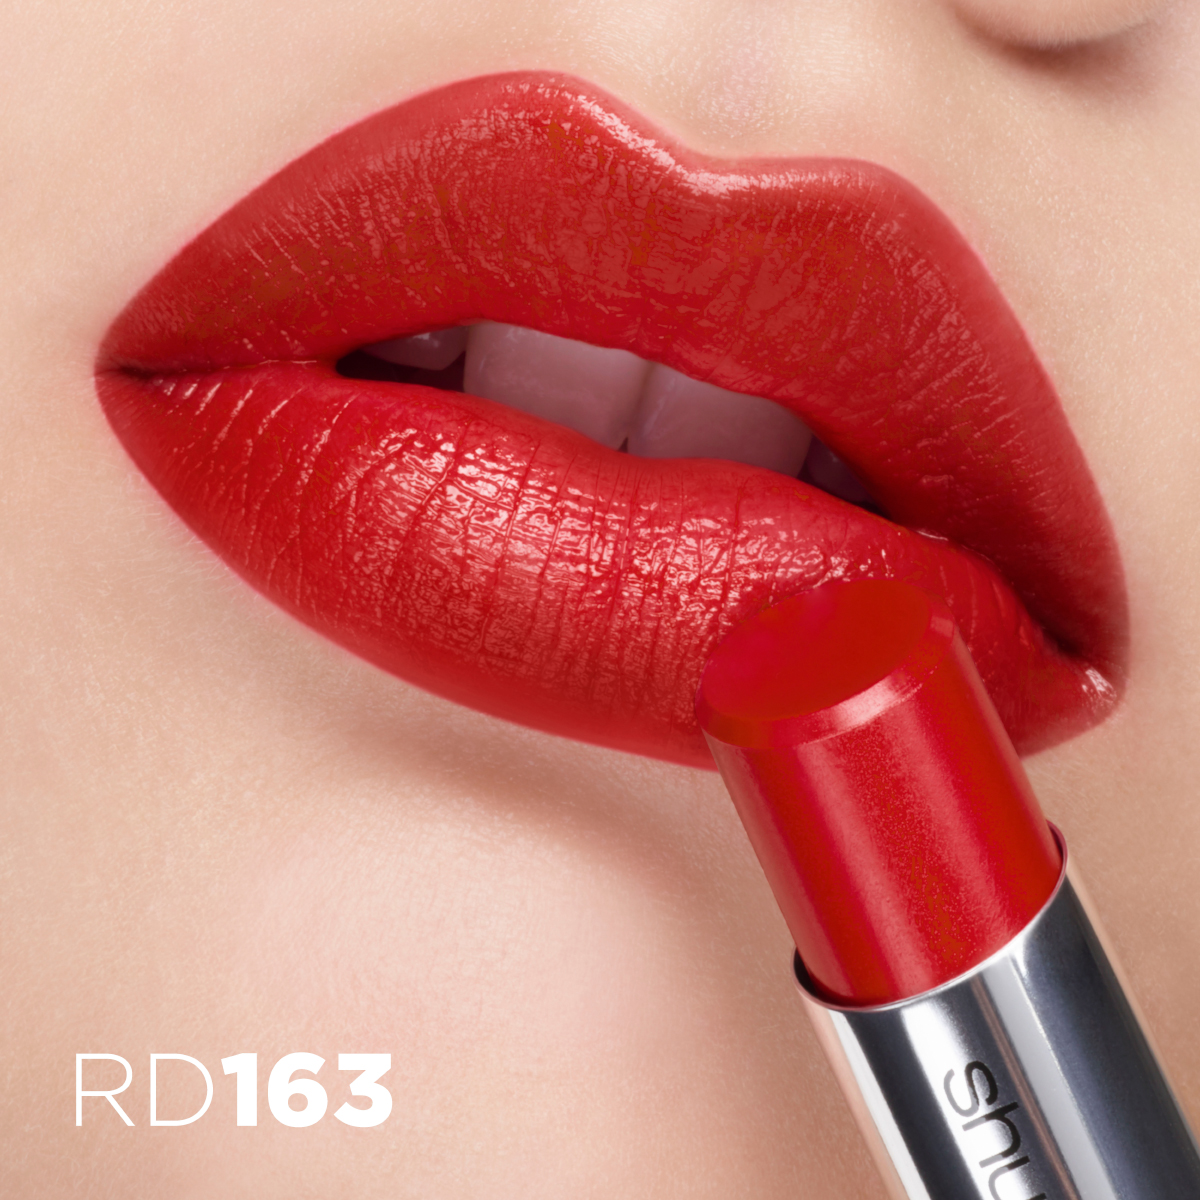 シュウ ウエムラ」を代表する赤「RD 163」はなぜ女性の肌を美しく